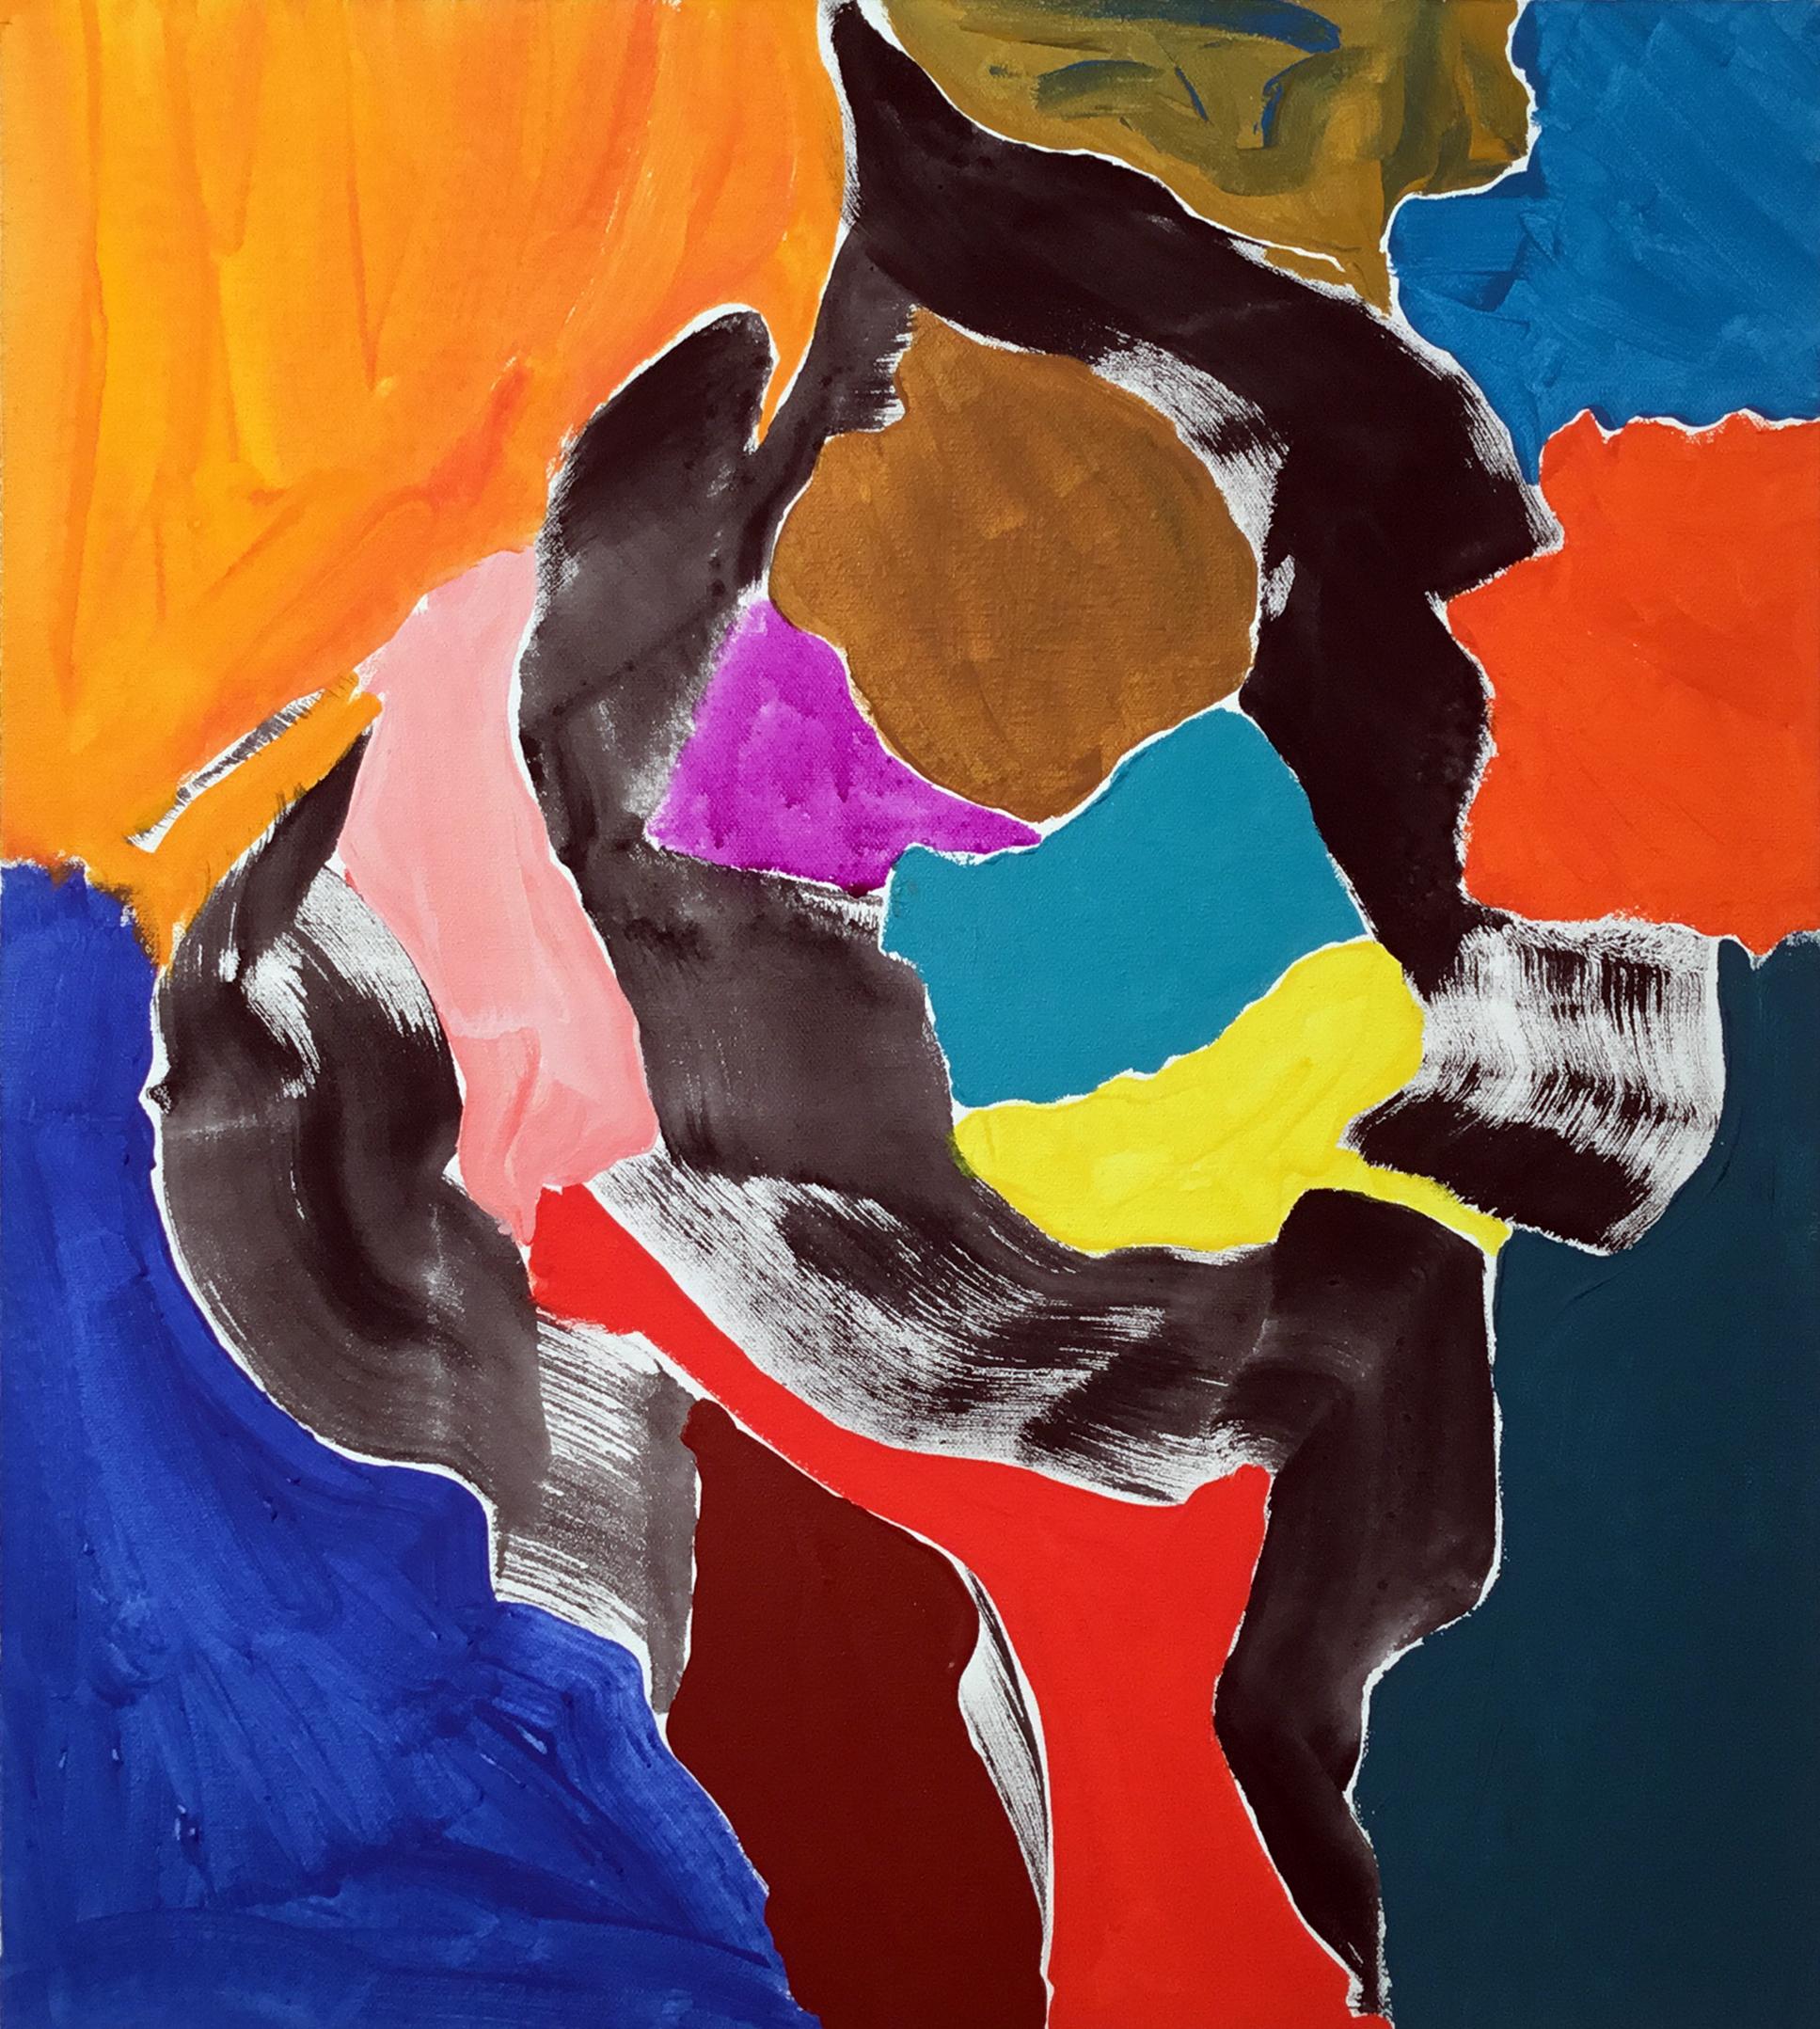 Abstract Painting David Headley - #30 School of Paris - Peinture à l'huile abstraite contemporaine et moderne sur toile